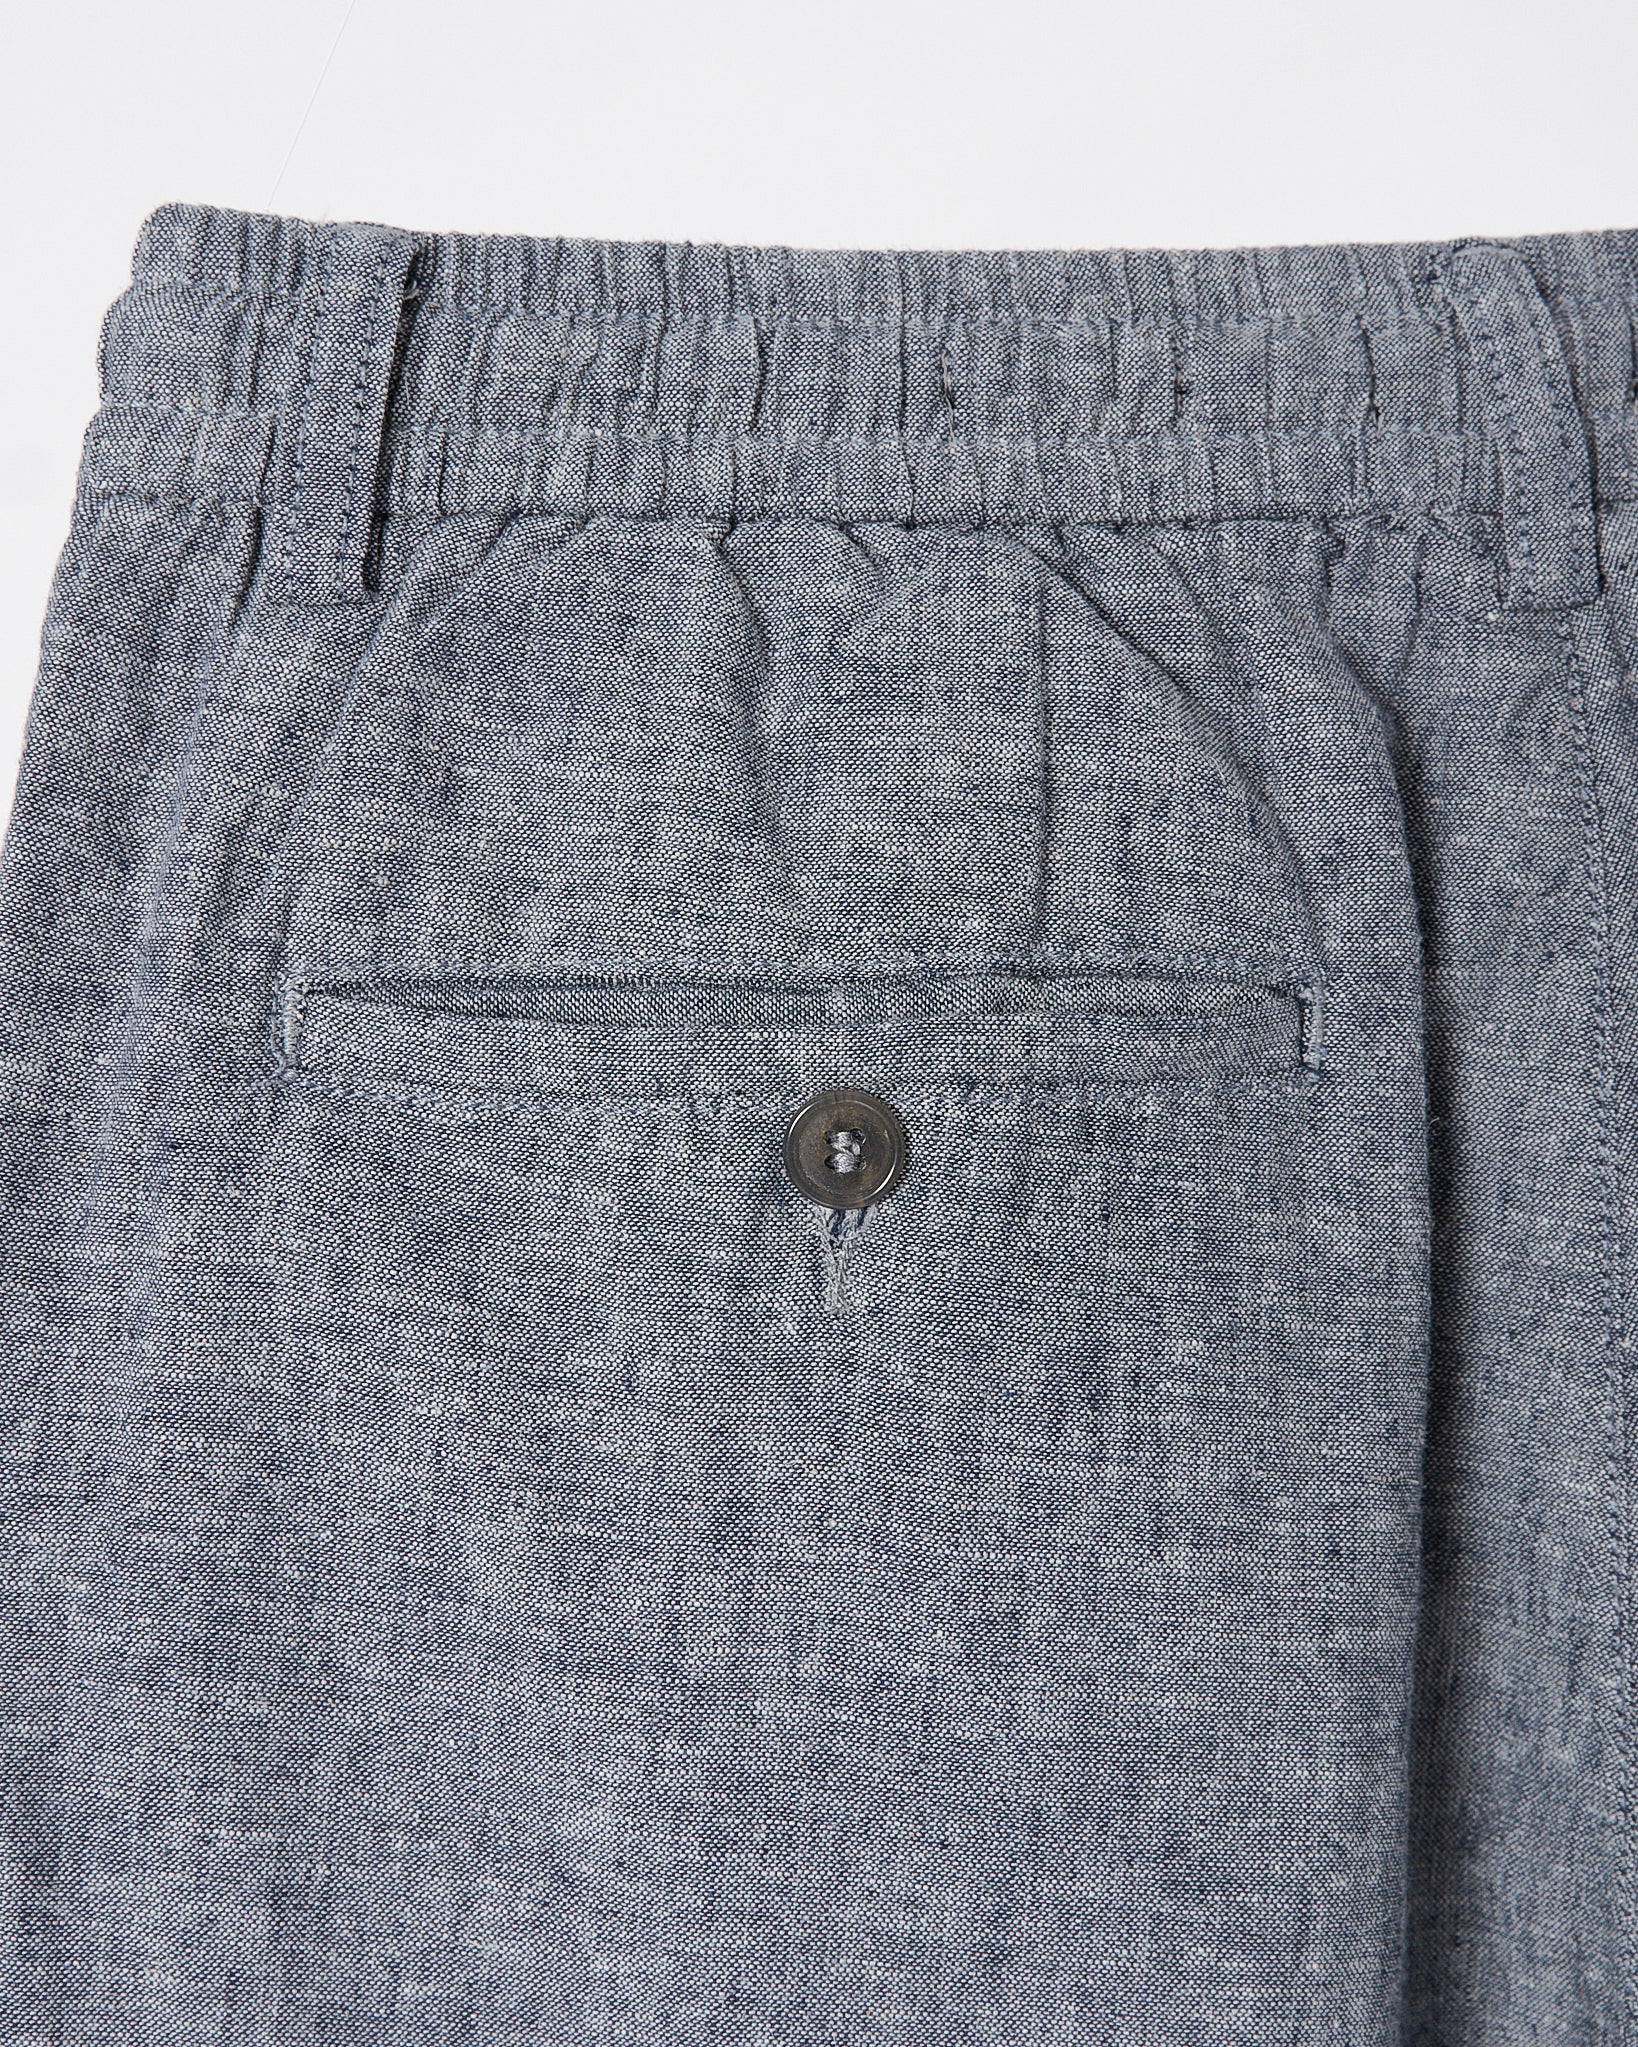 RL Cotton Regular Fit Men Grey Pants 24.90